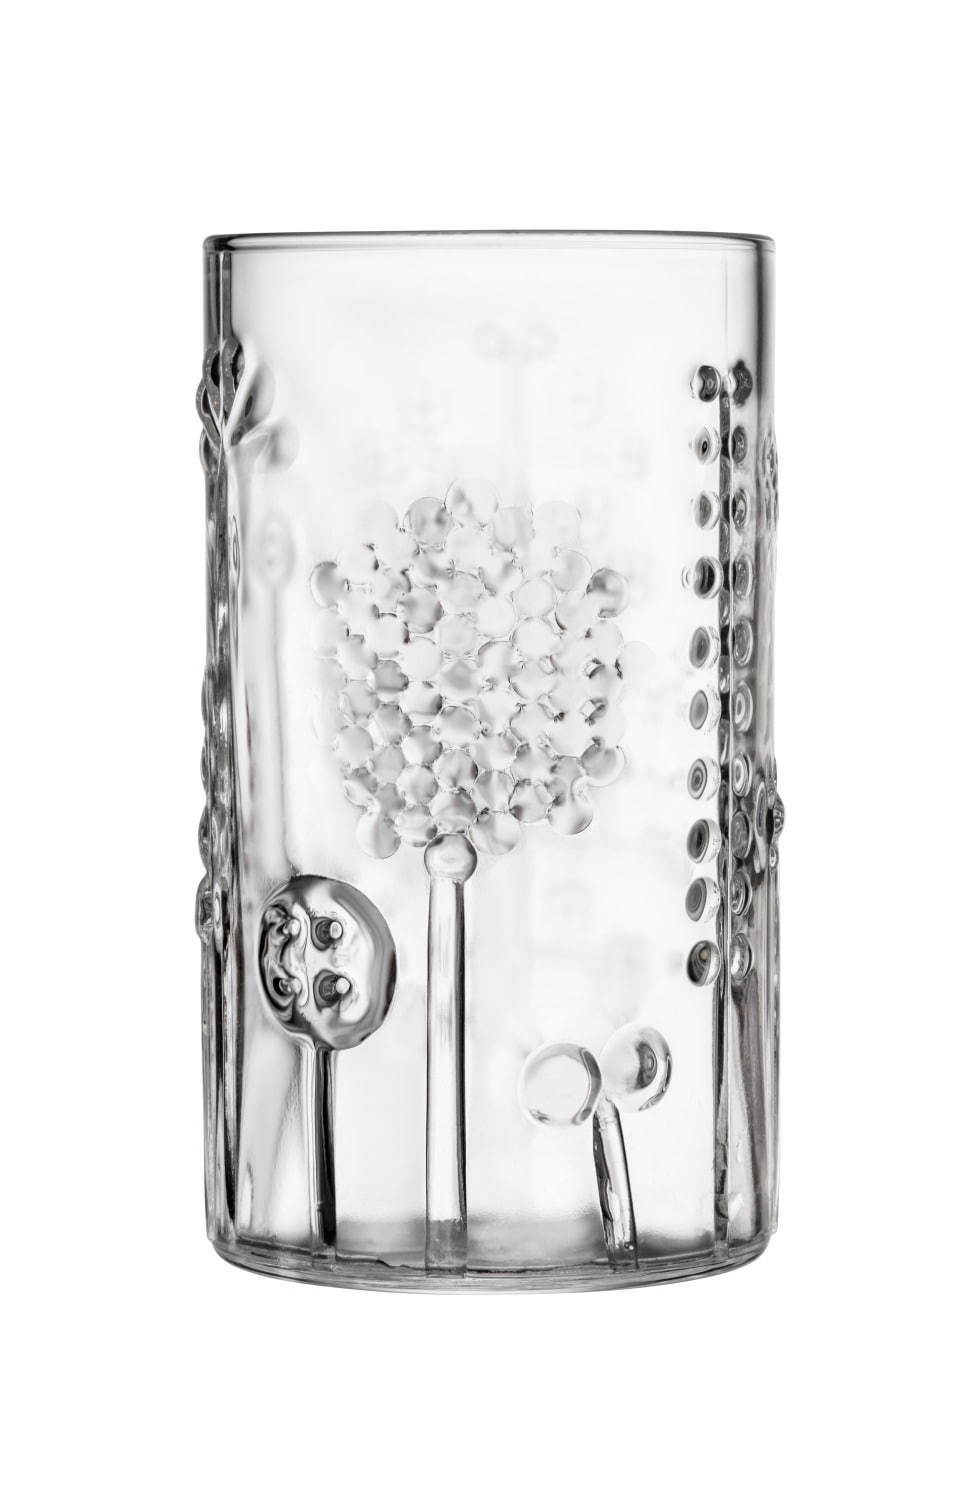 イッタラ「フローラ」新作ガラス食器 - 草花模様を配したタンブラー、手のひらサイズの鳥オブジェも｜写真4